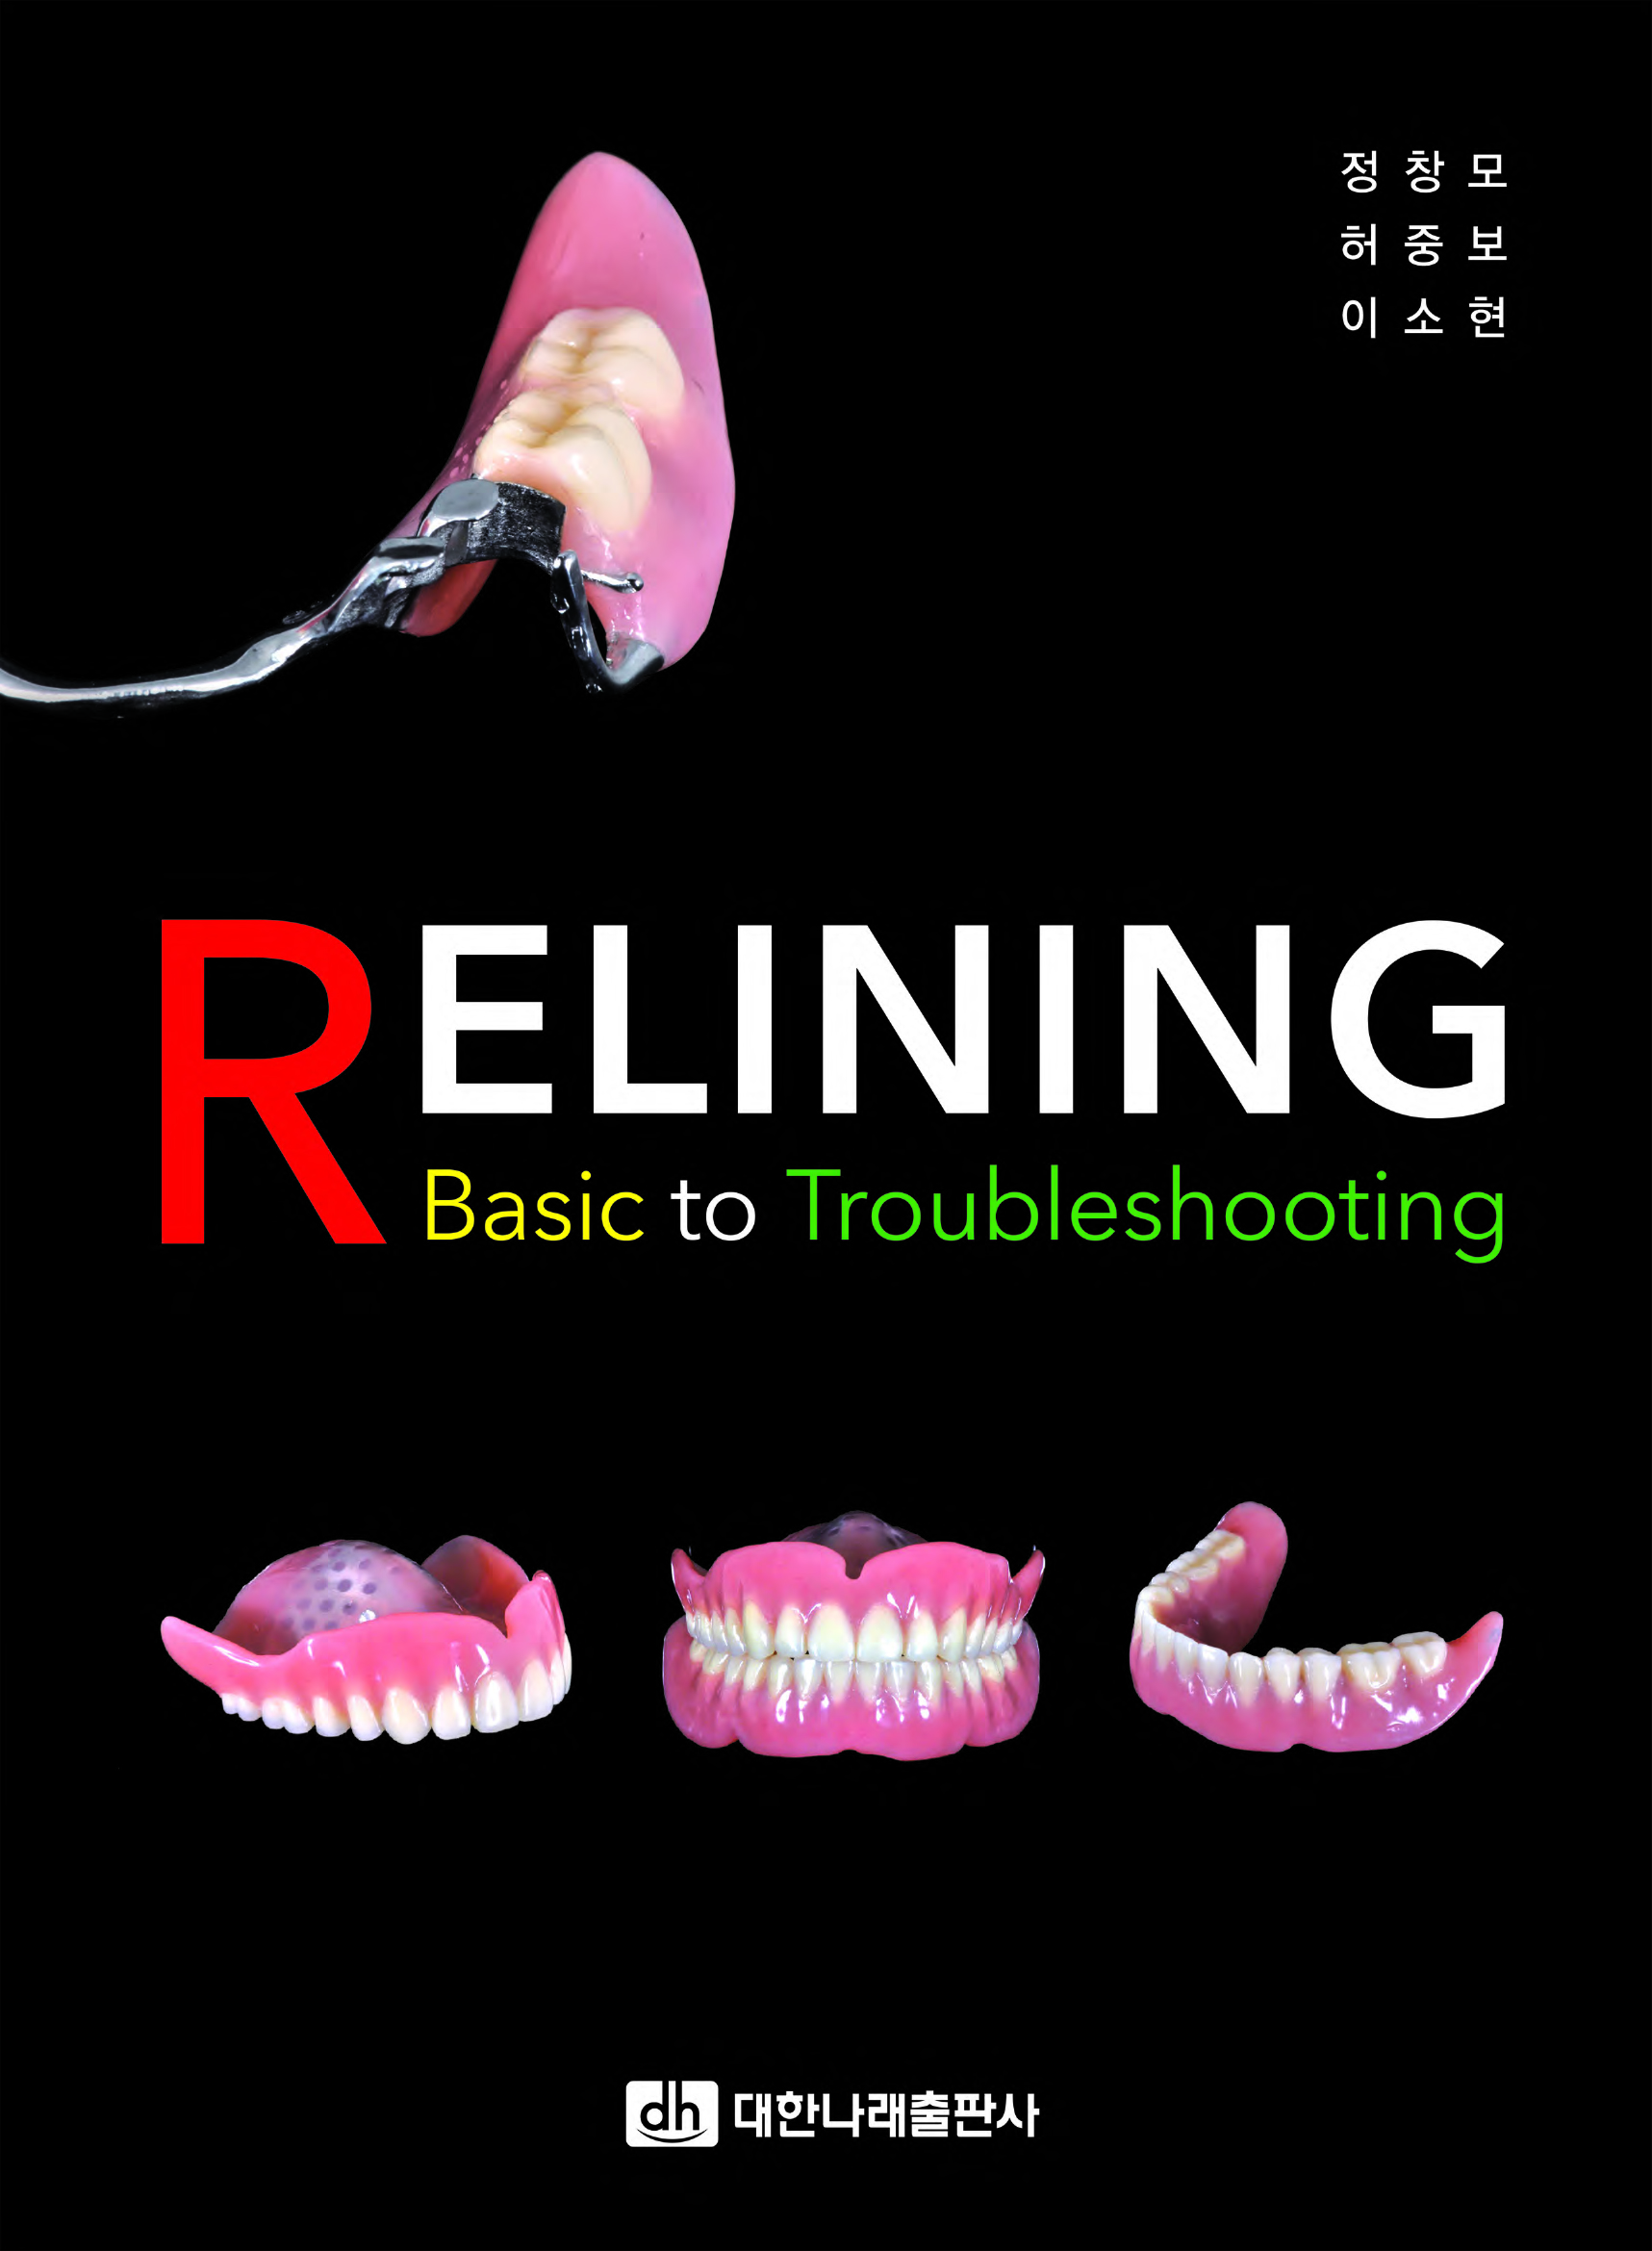 RELINING—Basic to Troubleshooting